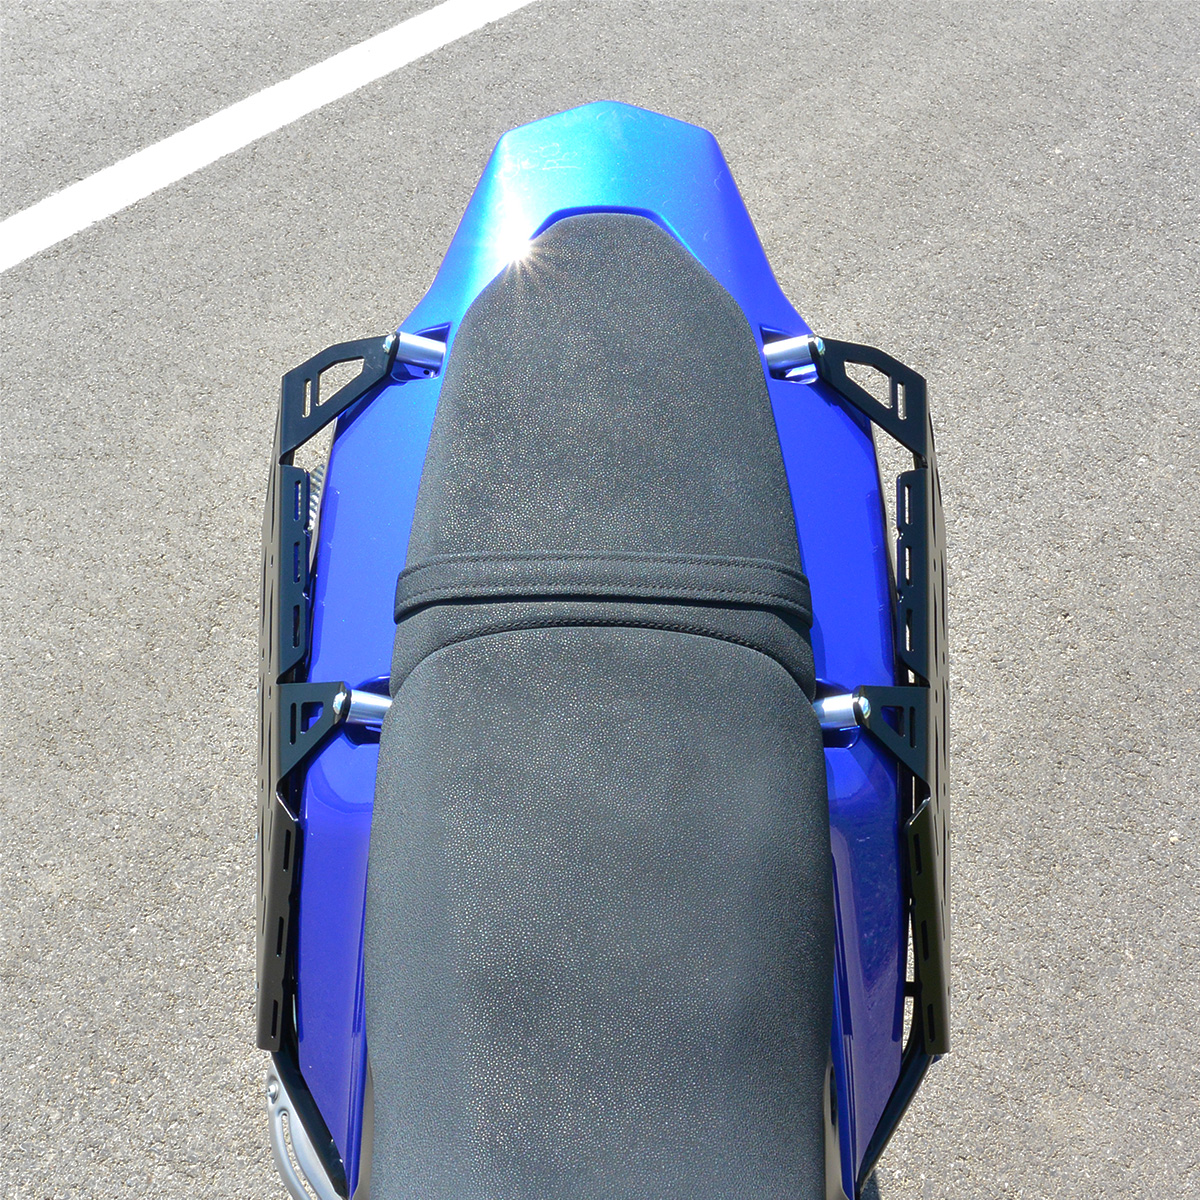 Yamaha Tenere 700 – Side Luggage Rack – Panonian.